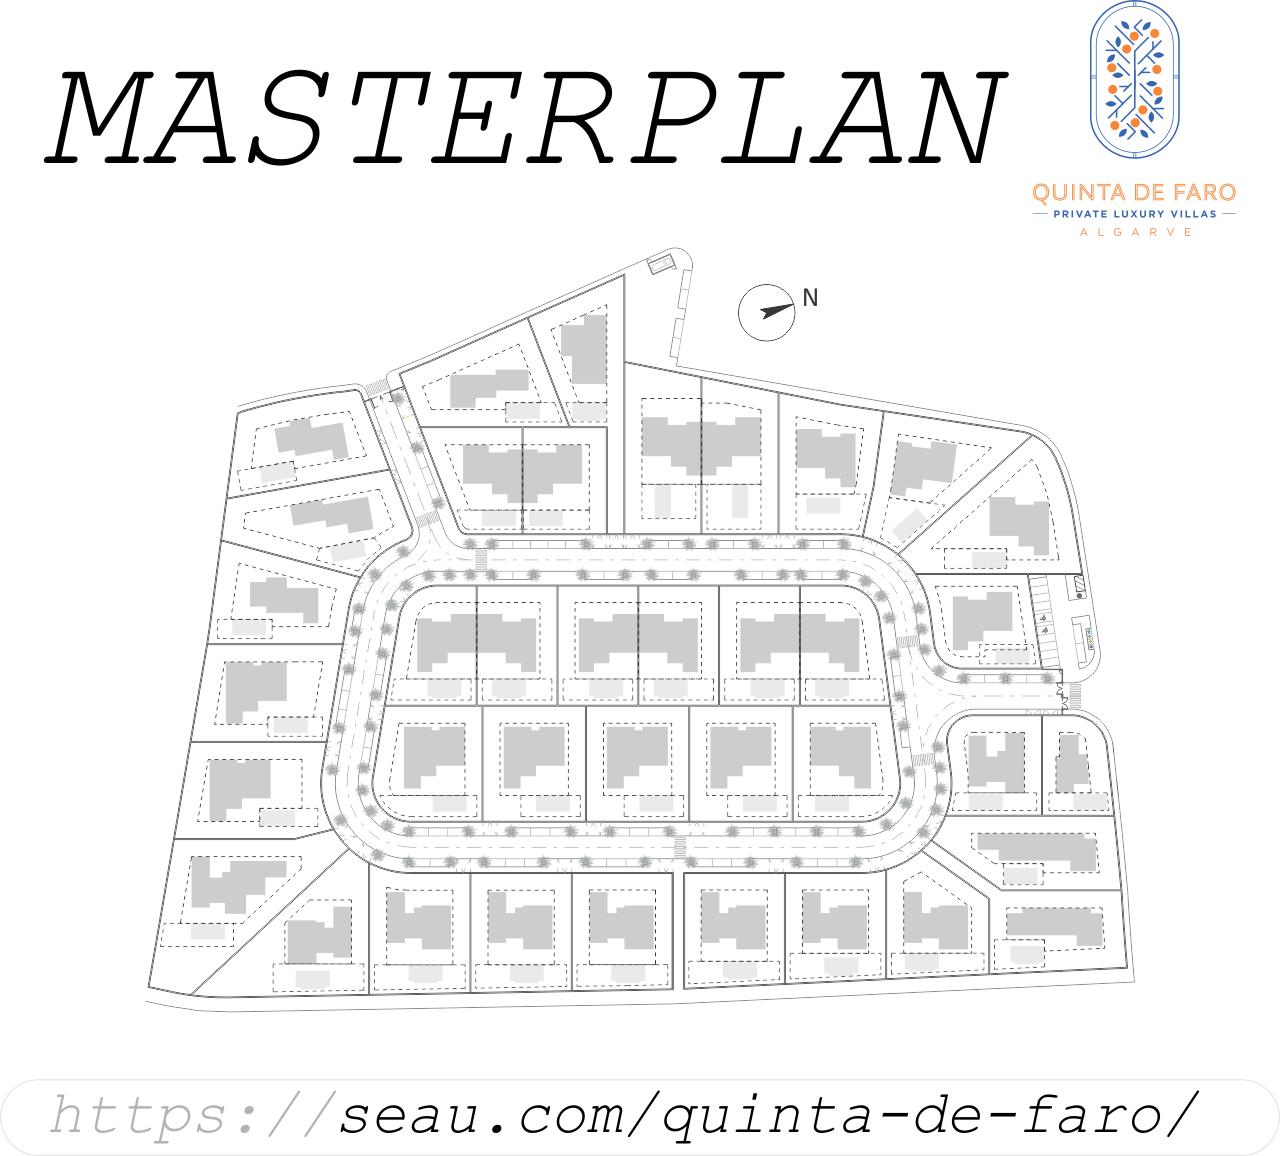 Masterplan Quinta de Faro. Voor meer informatie over de oppervlakten van de verschillende kavels en verschillende typen villa's, klik hier